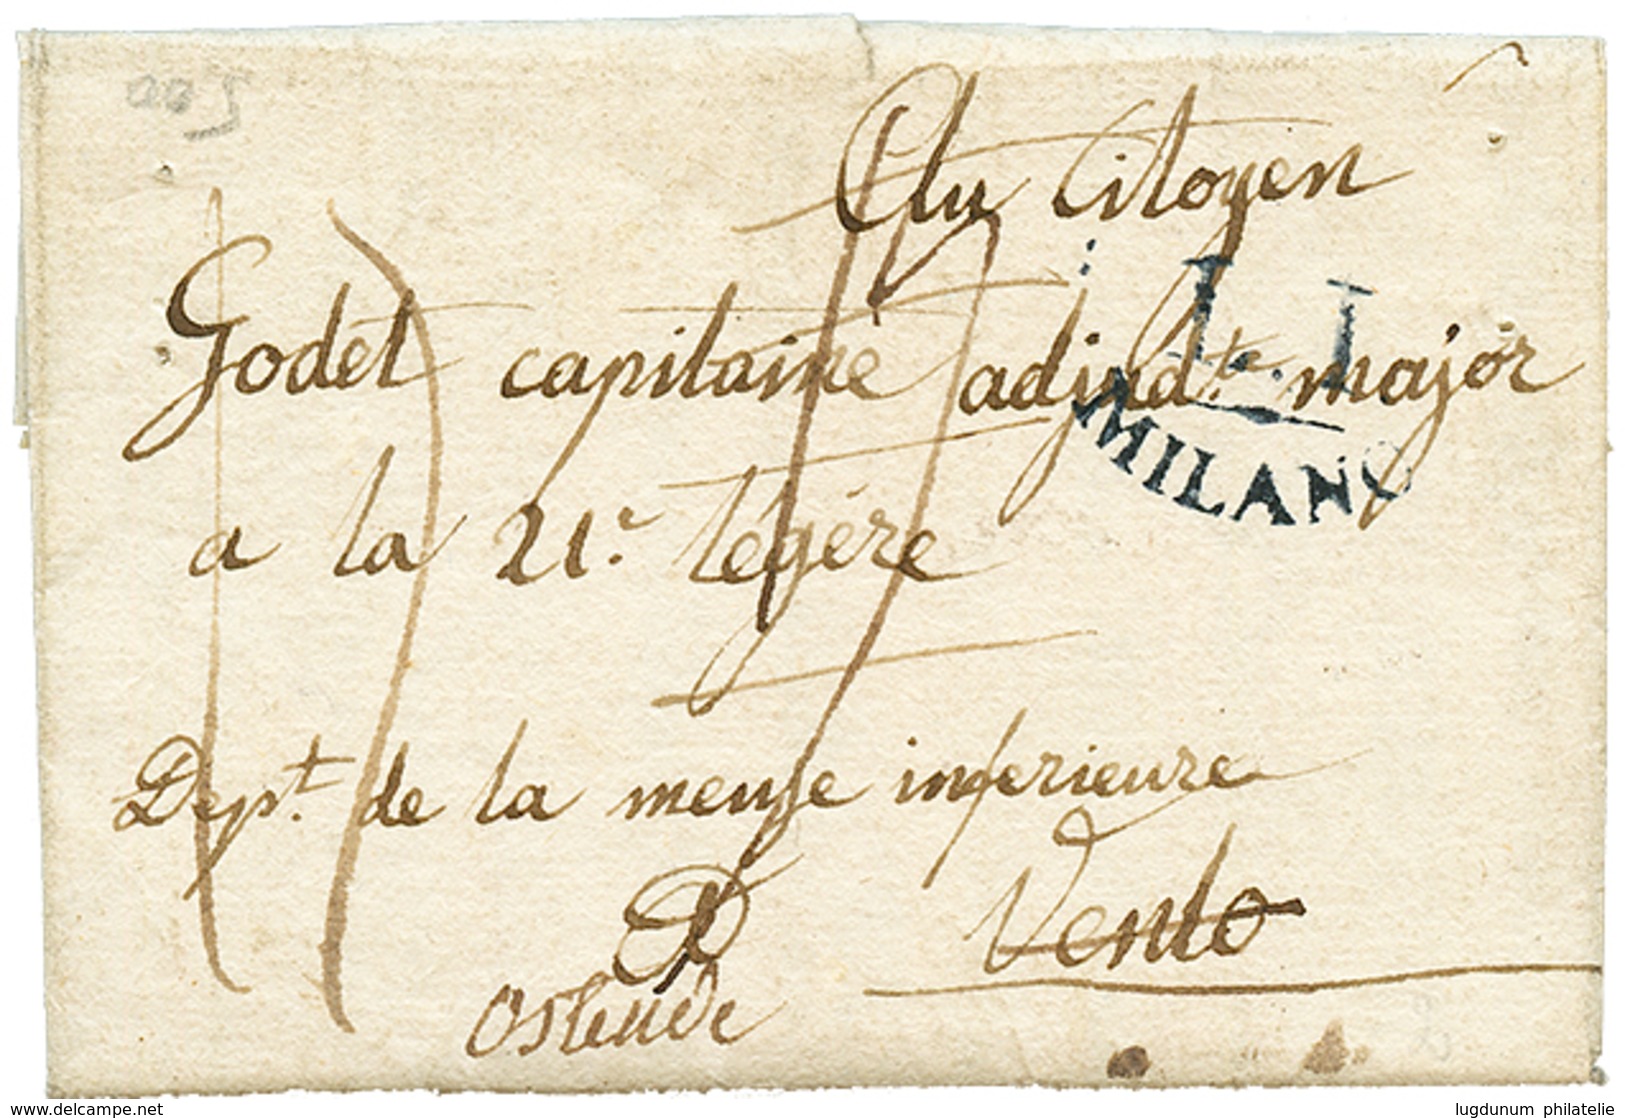 Trés Rare Cachet BRUGES/ DEBOURSE Au Verso D'une Lettre Avec Texte (ss Date) De COMO (ITALIE) Pour VENLO Redirigé à OSTE - 1792-1815: Départements Conquis